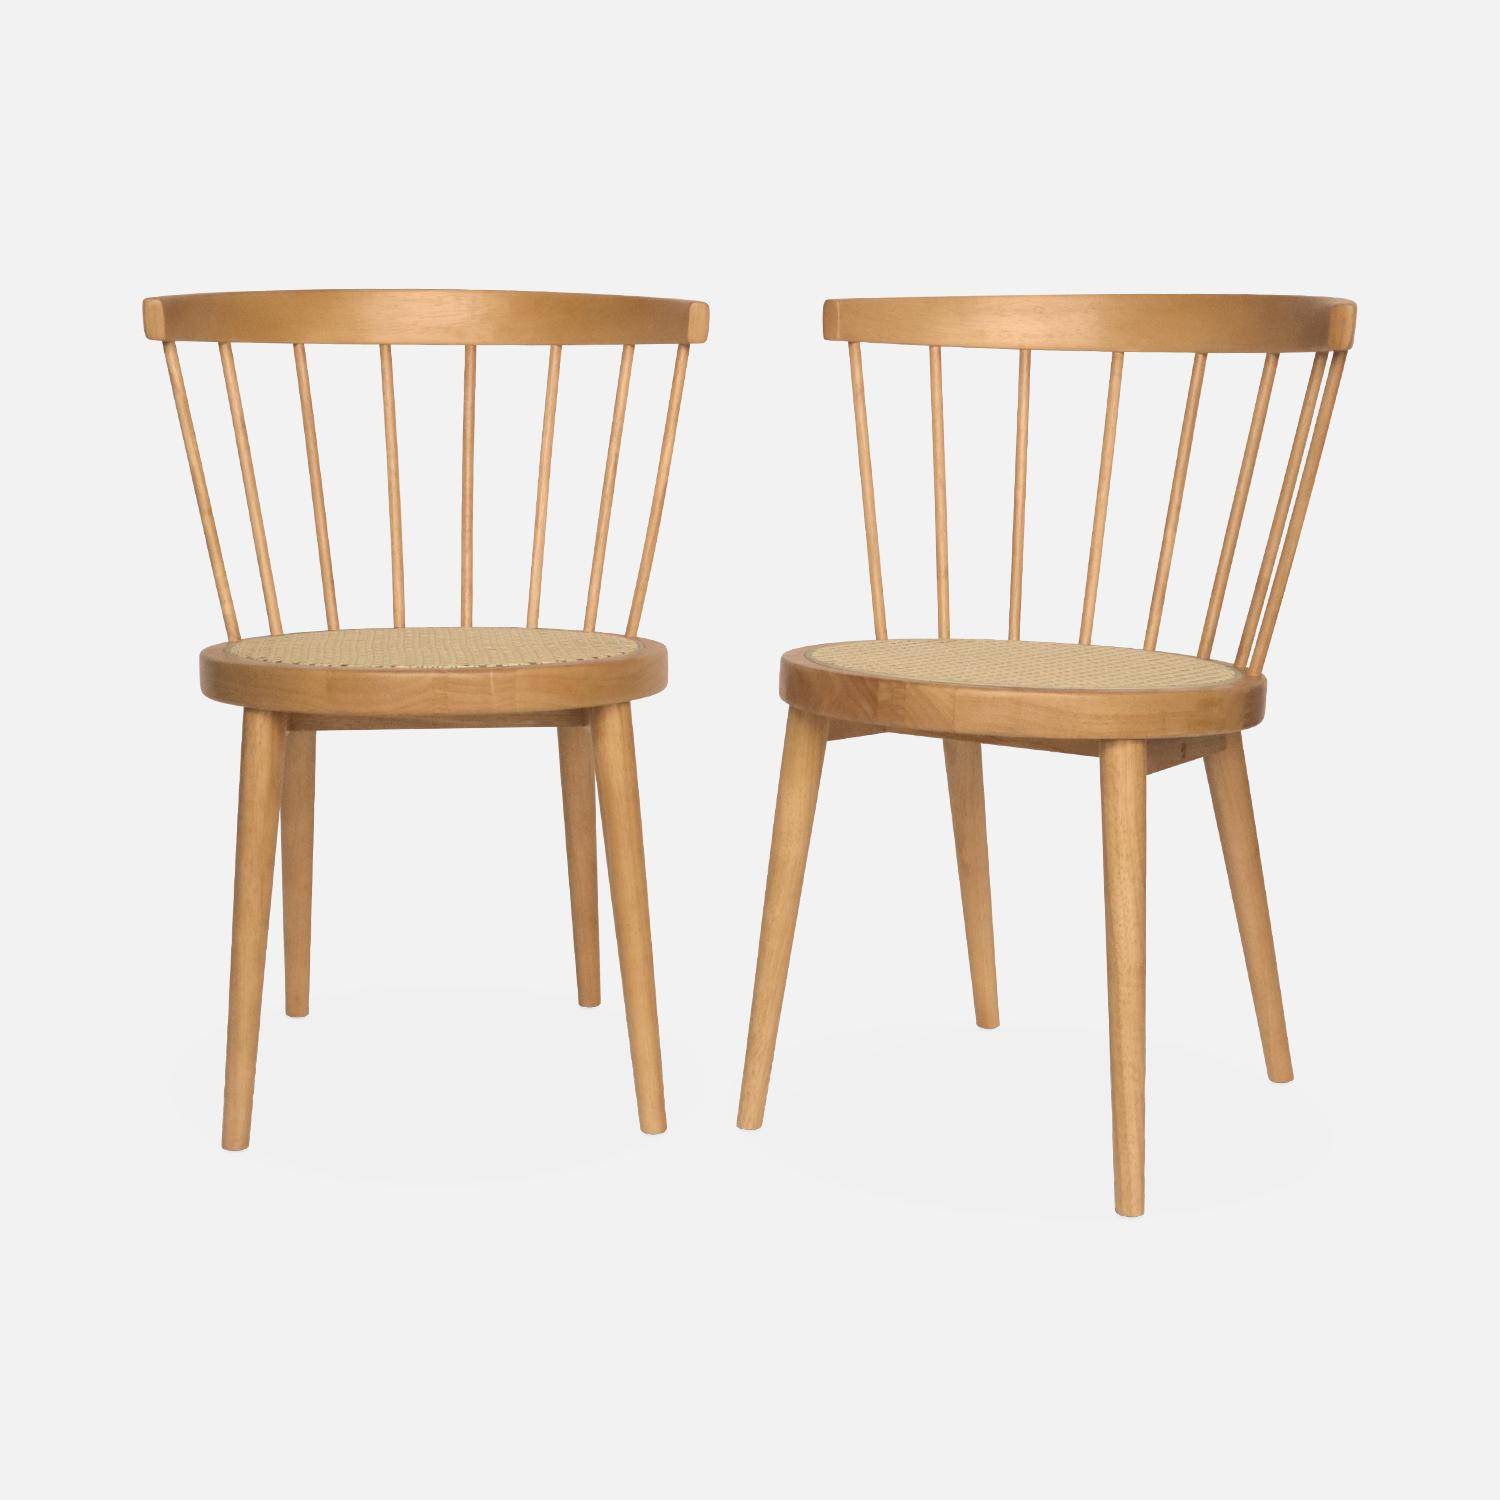 Set di 2 sedie in legno naturale e canna, Nora, L 54 x P 54 x H 76,5 cm. Photo4